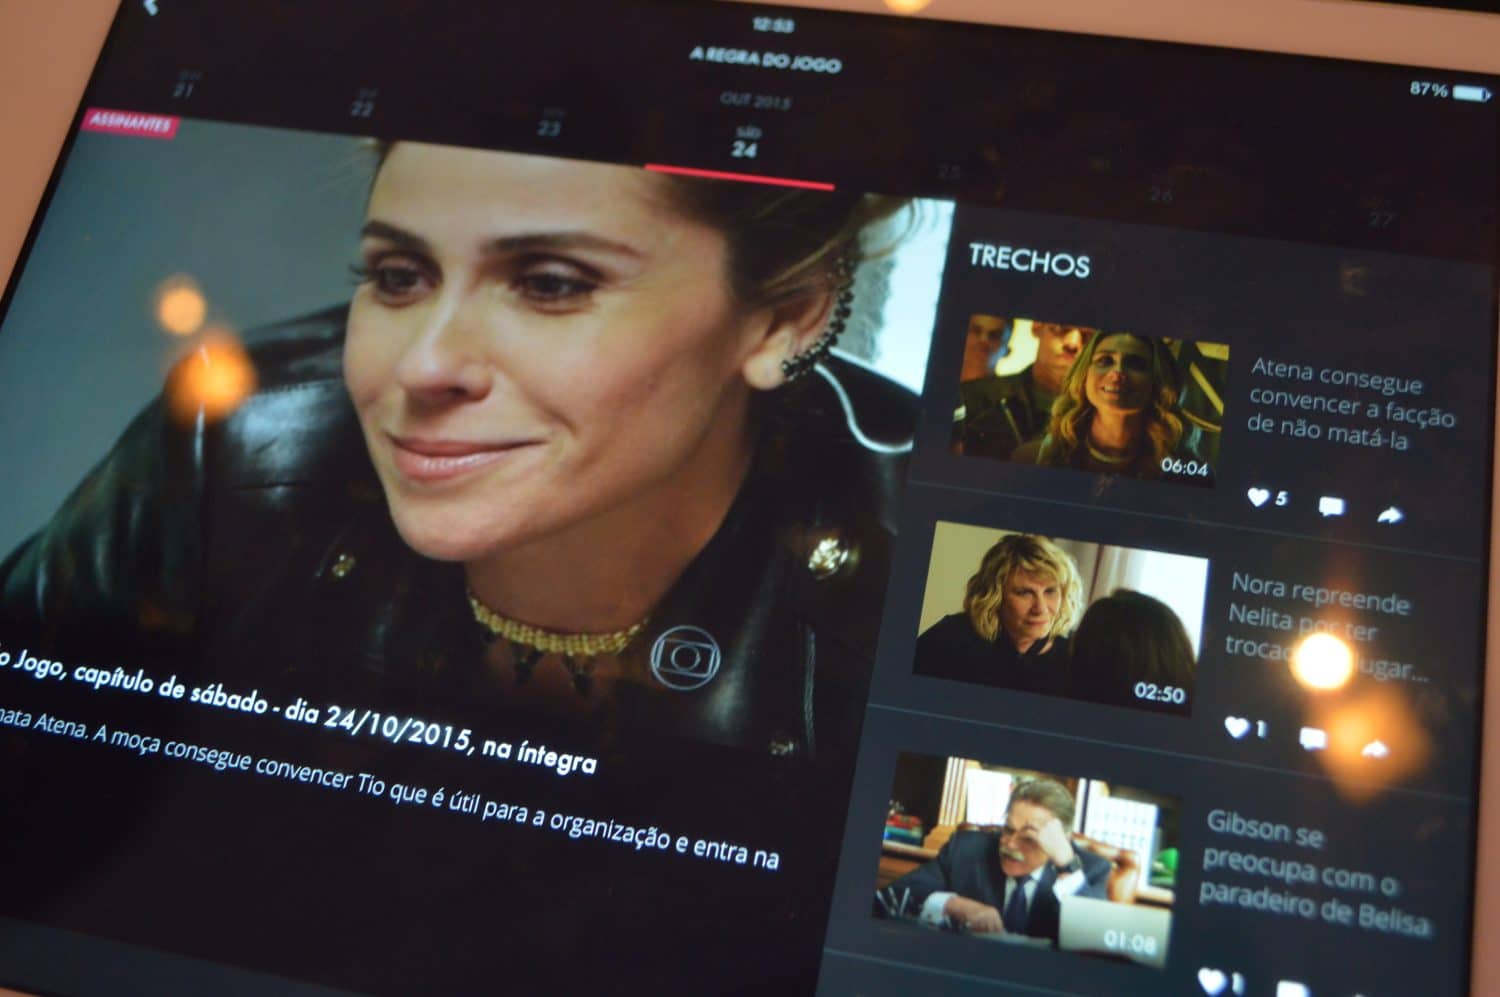 Globo lança 'Globo Play', serviço de streaming para assistir à TV